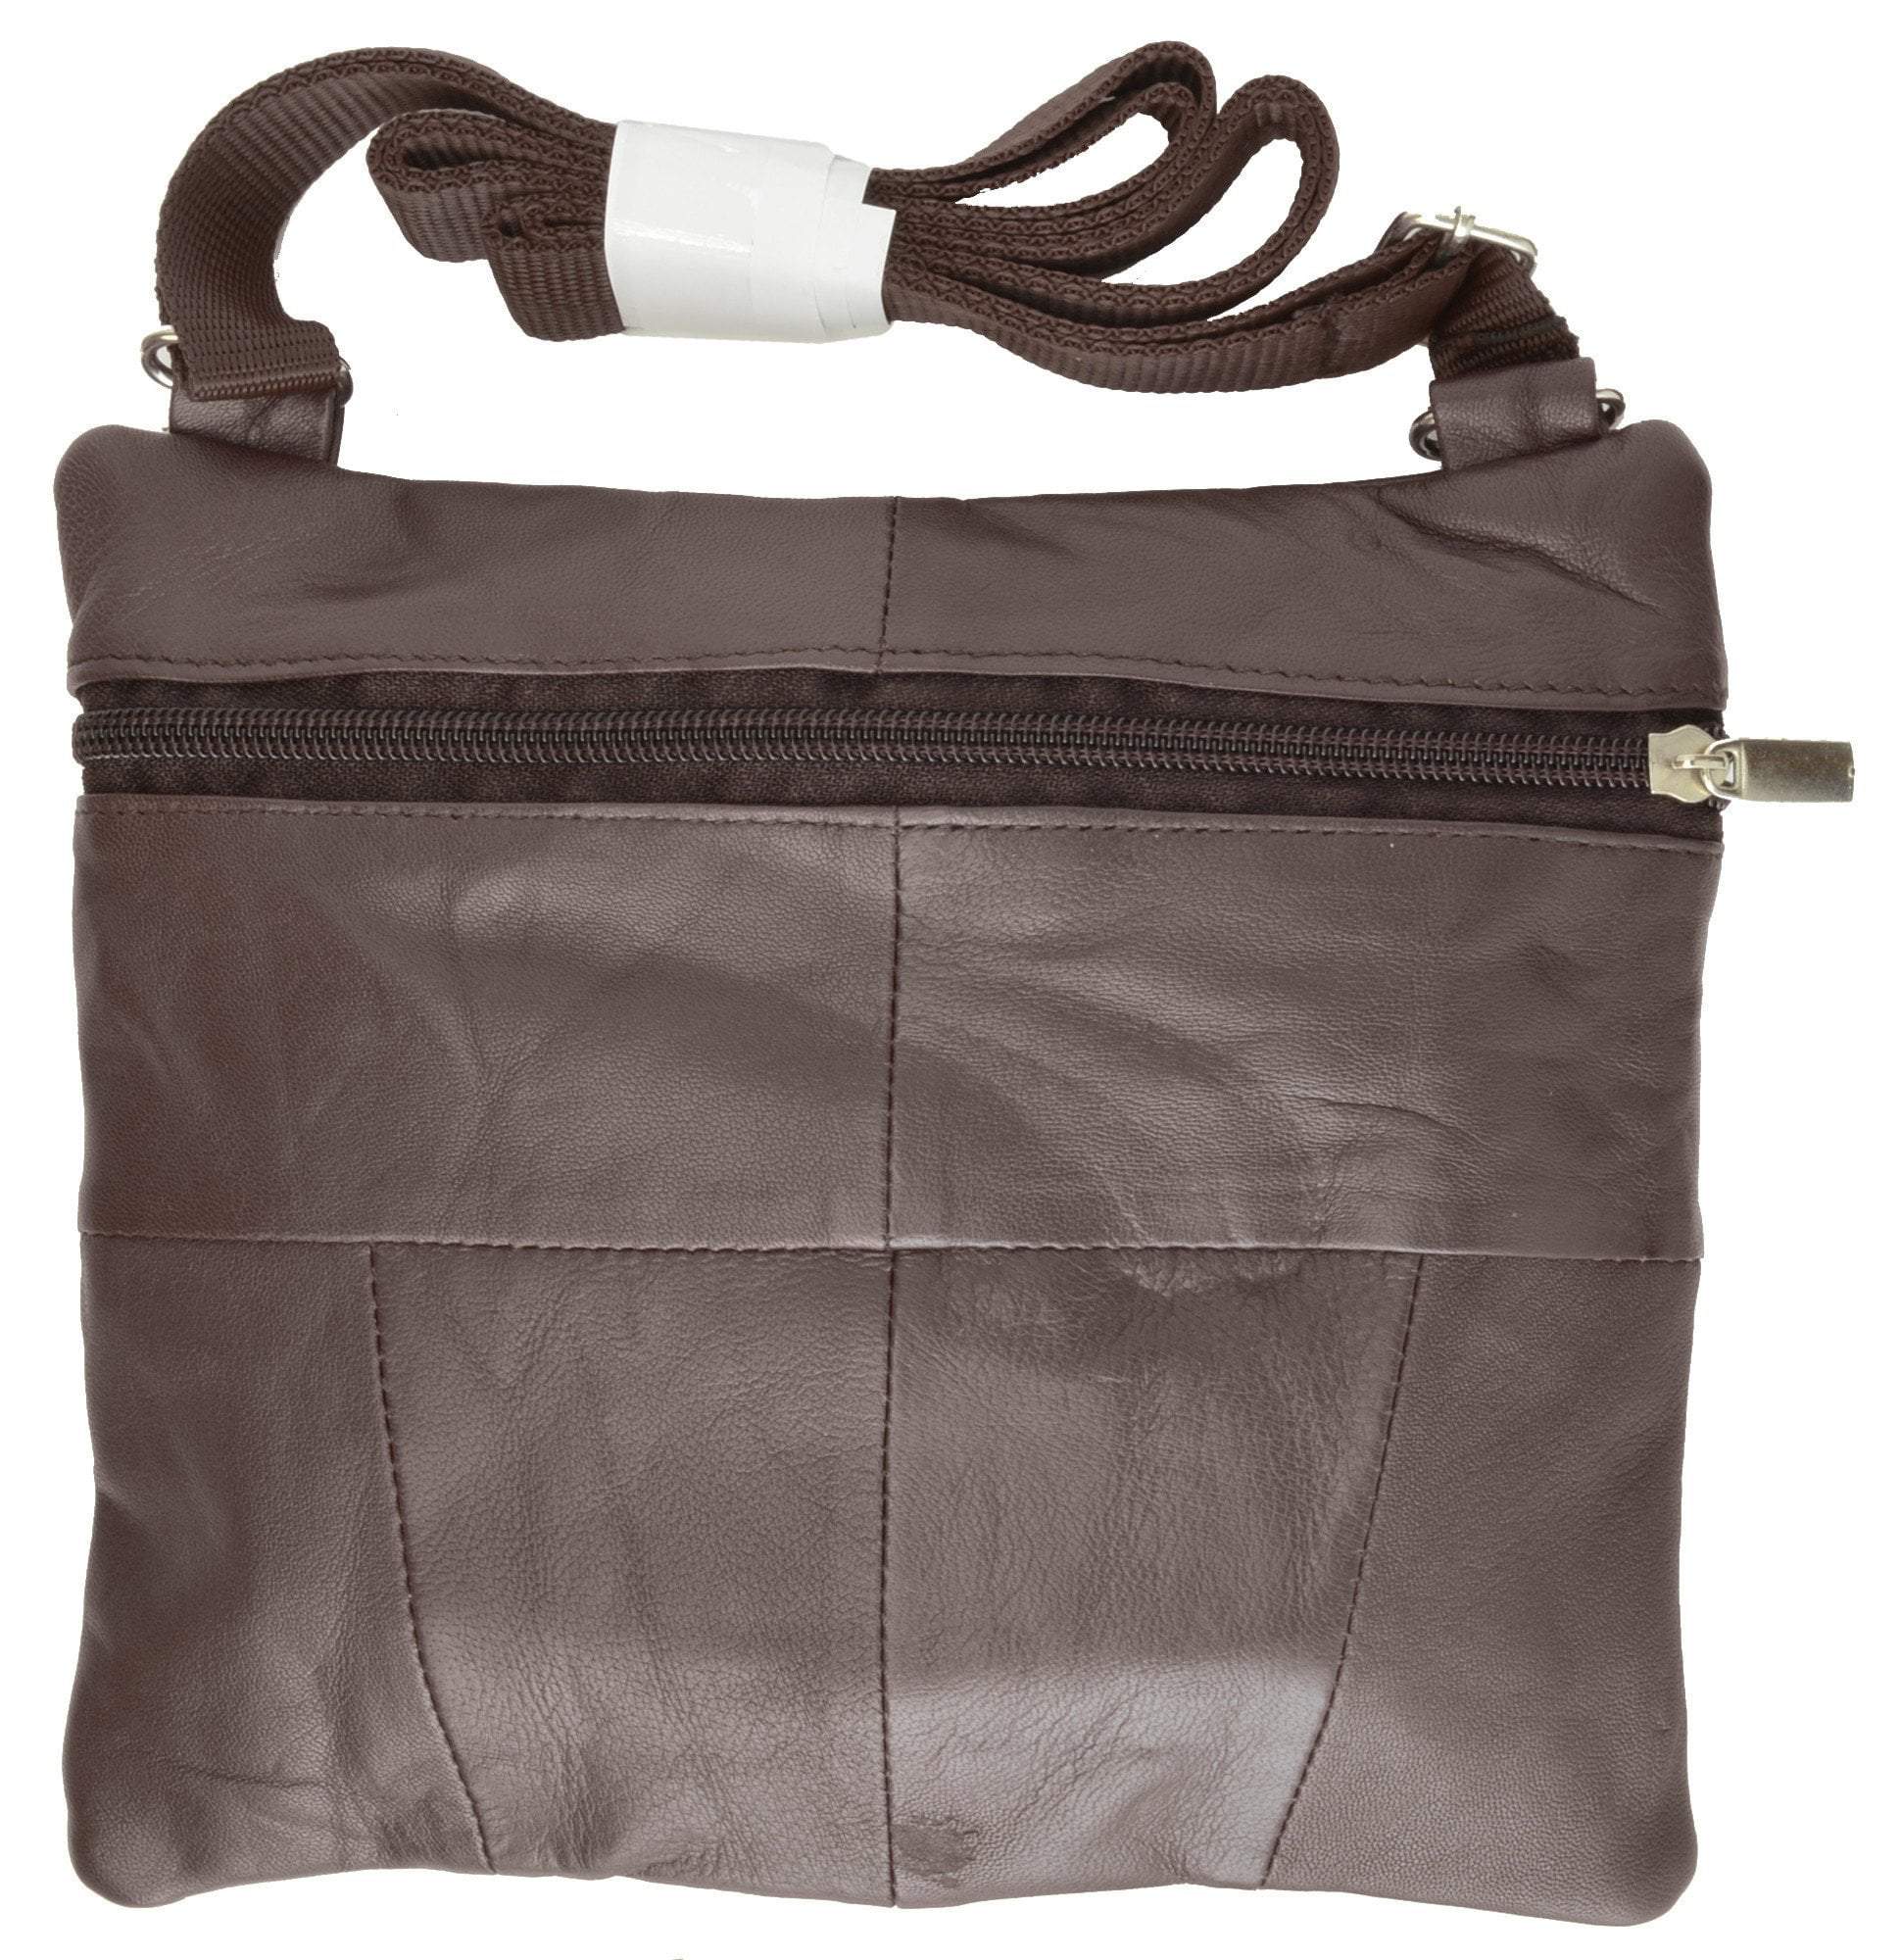 Buy WOODLAND Unisex Hand Bag Camel [BGCB 12] Online - Best Price WOODLAND  Unisex Hand Bag Camel [BGCB 12] - Justdial Shop Online.